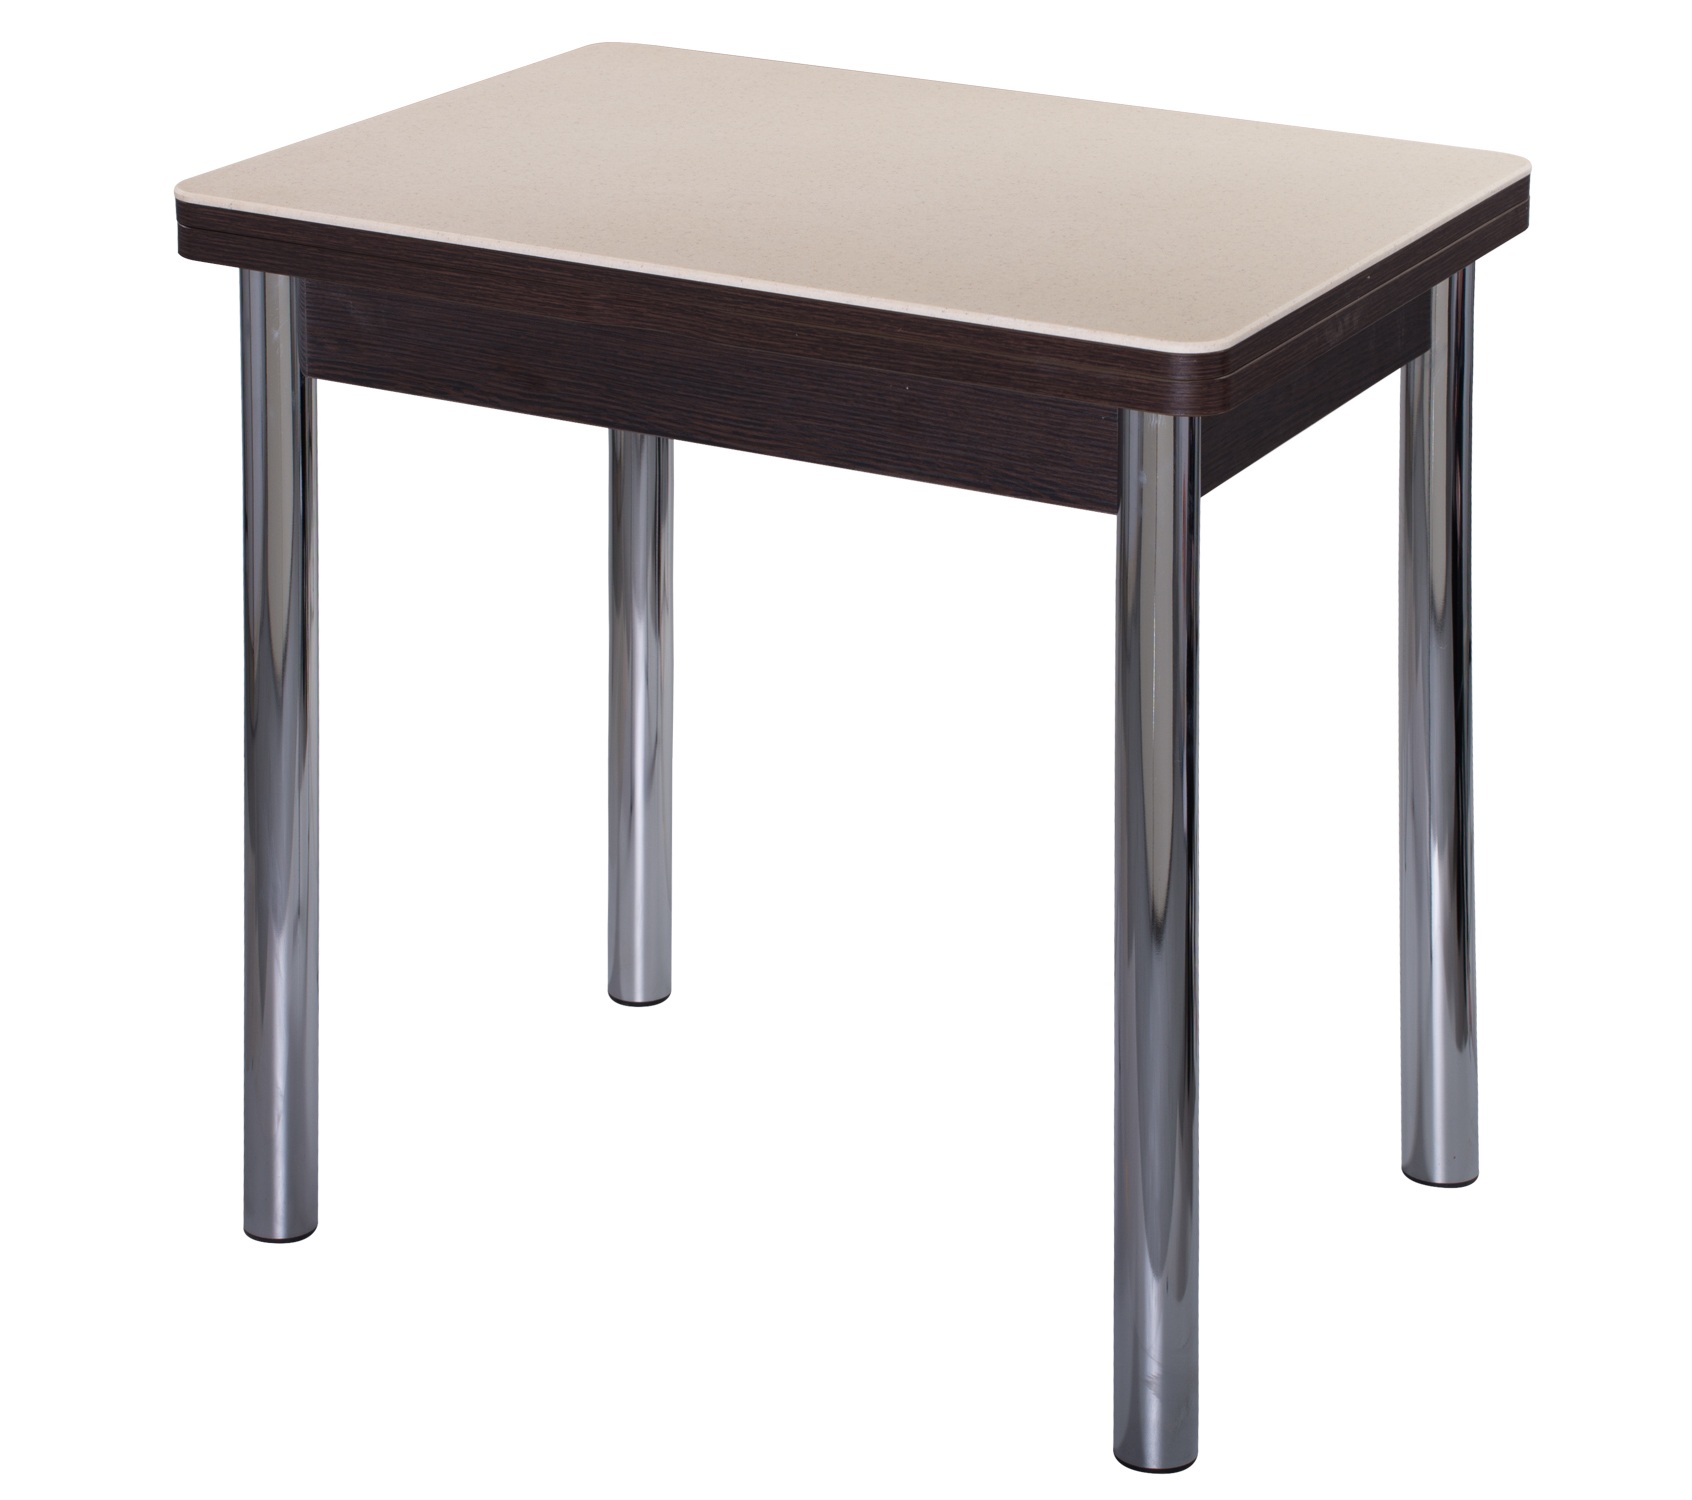 Стол для маленькой кухни венге, стекло бежевое 80х60 см. (арт. М4656)